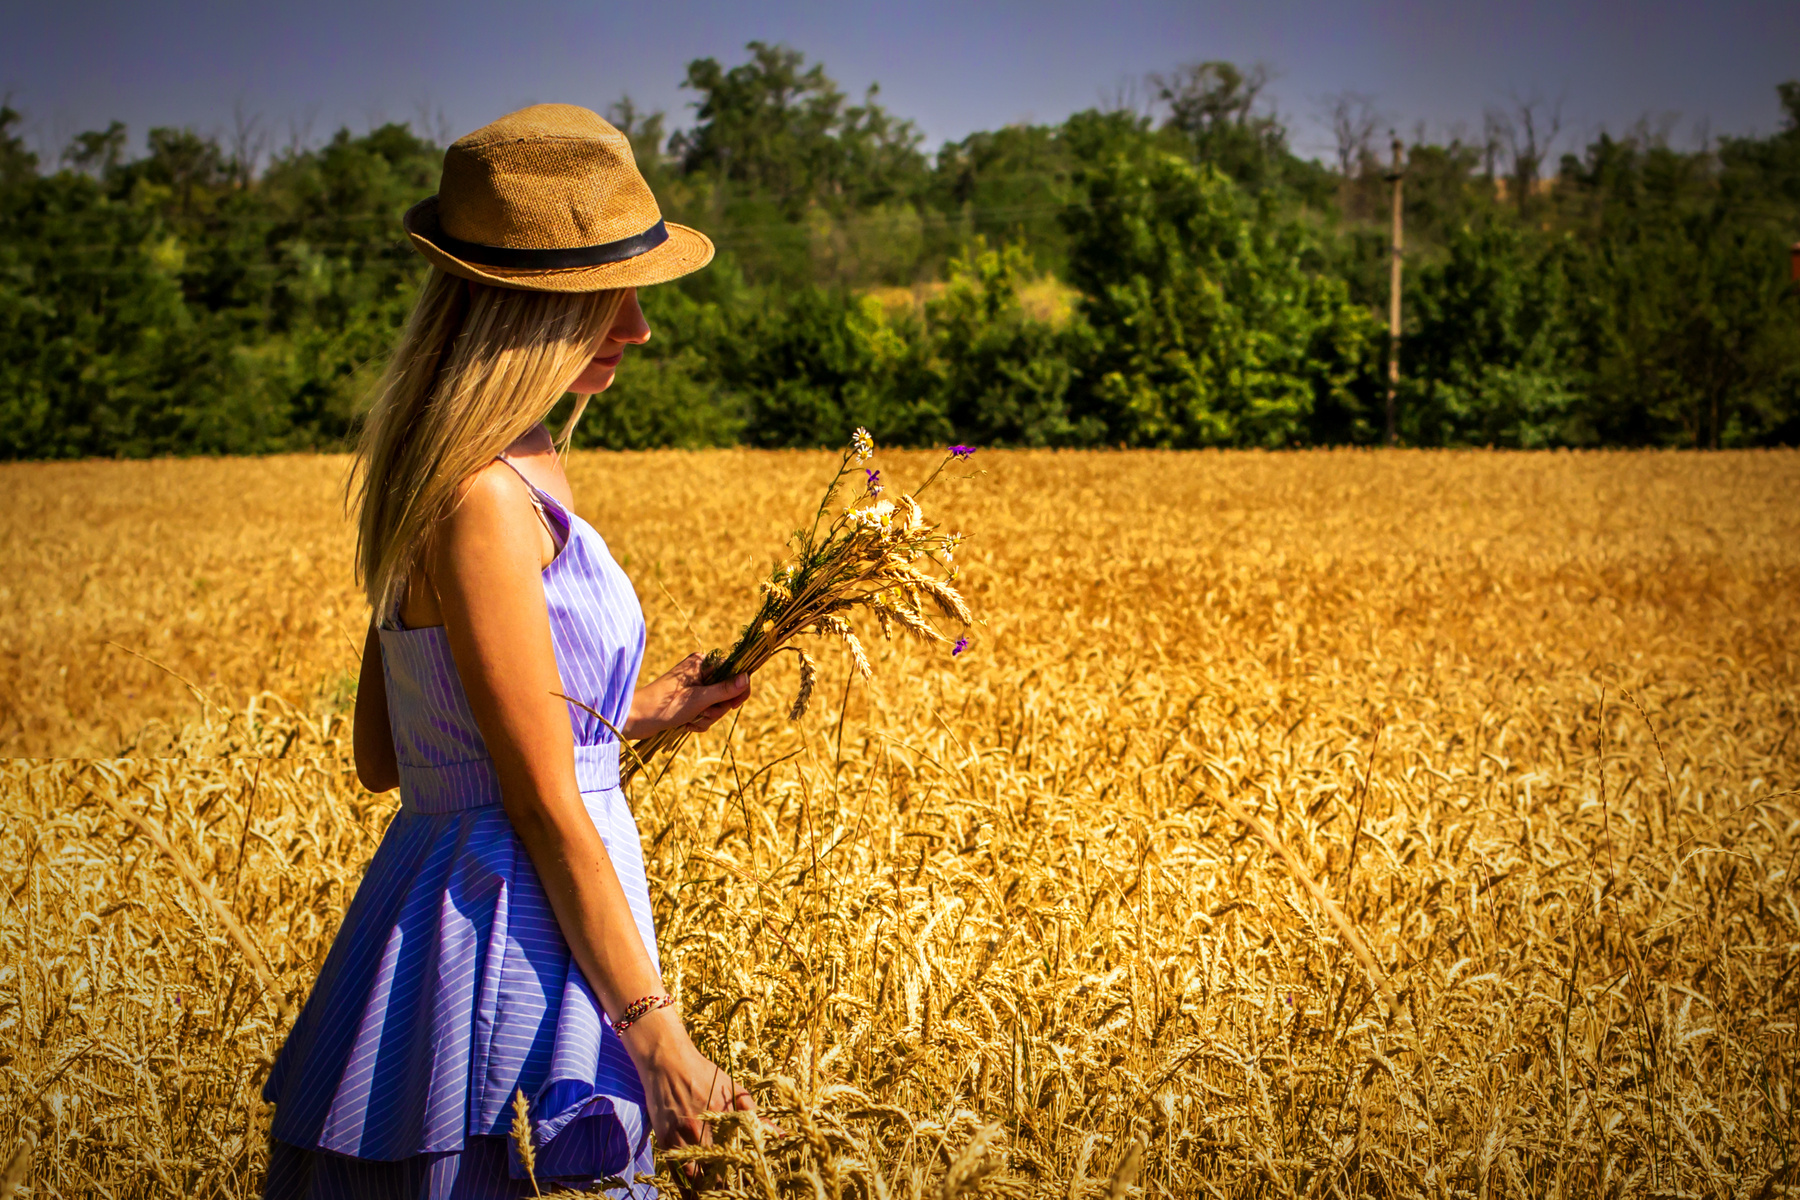 *** пшеница поле лето июльское солнце встало красивое место девушка колосья ветер раздувает волосы букет колосьев ранее утро